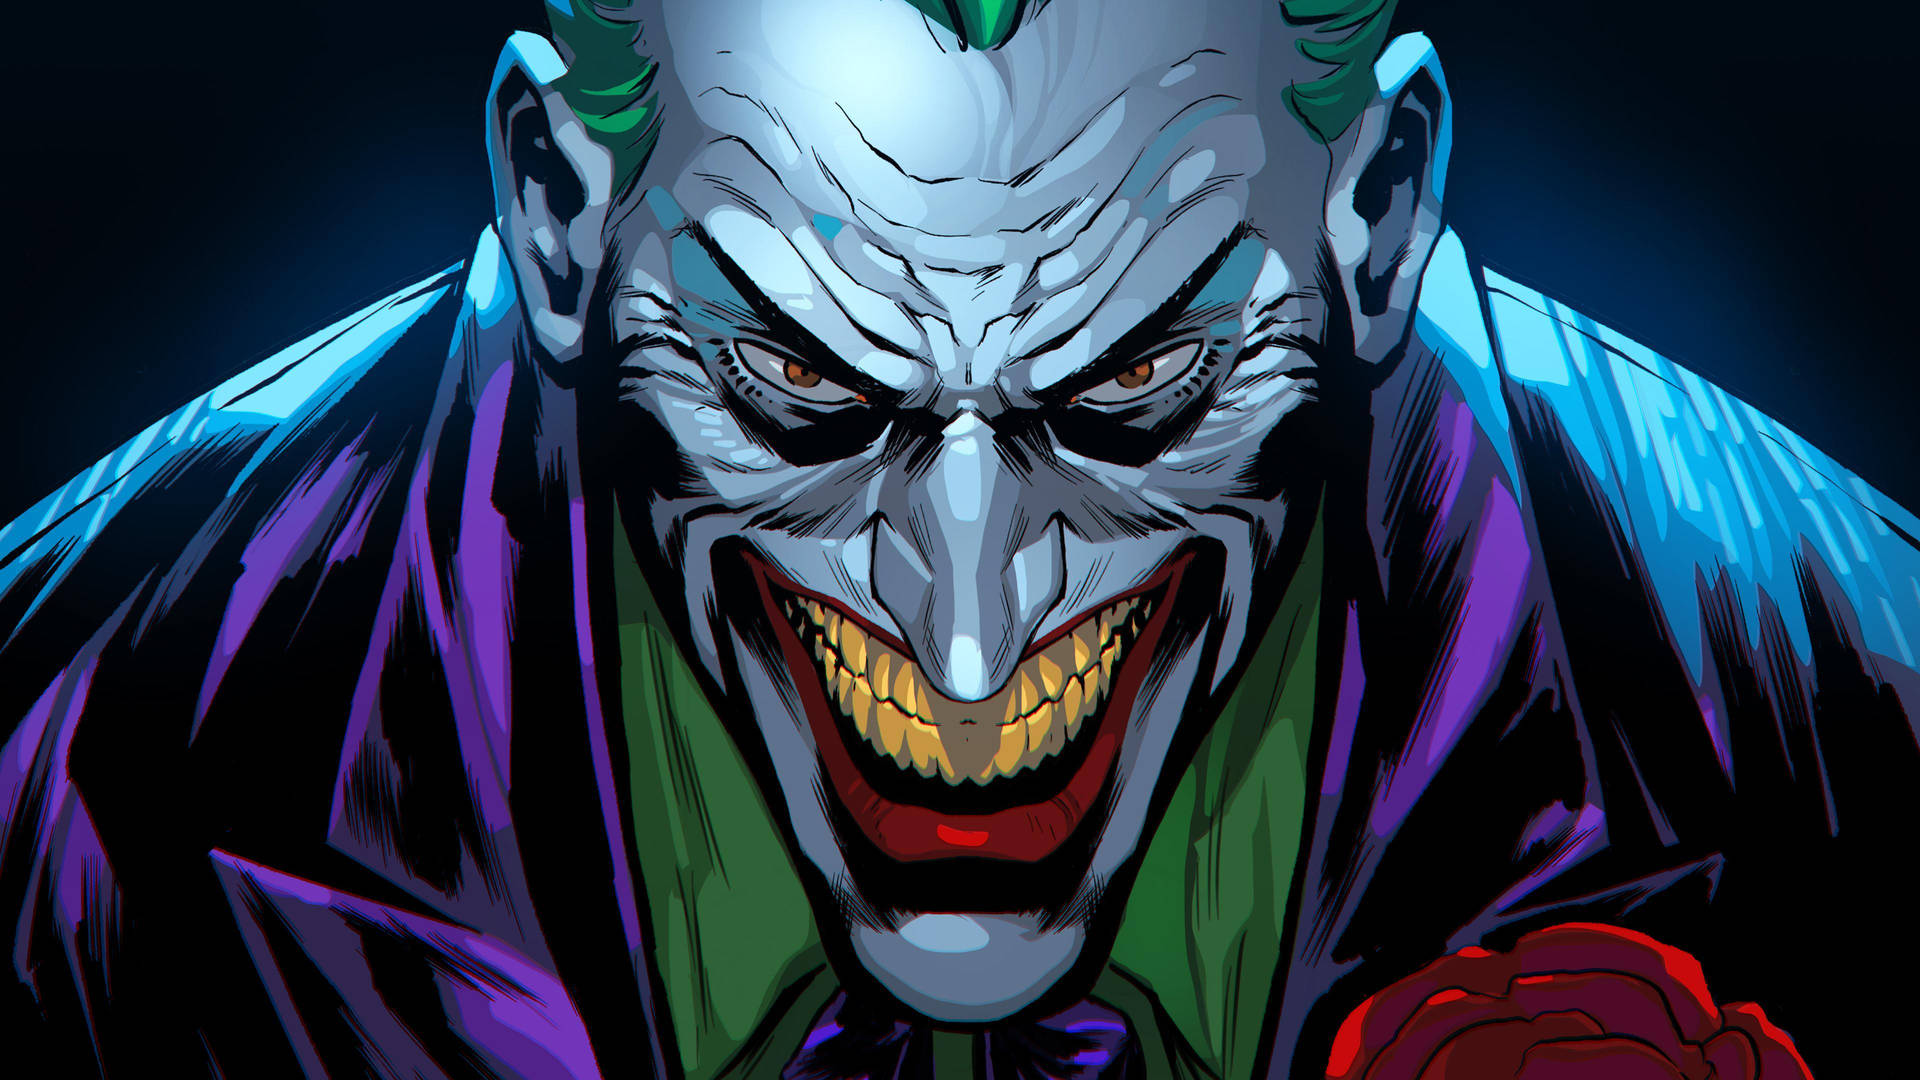 Joker Comic 4k Ultra Hd Wallpaper